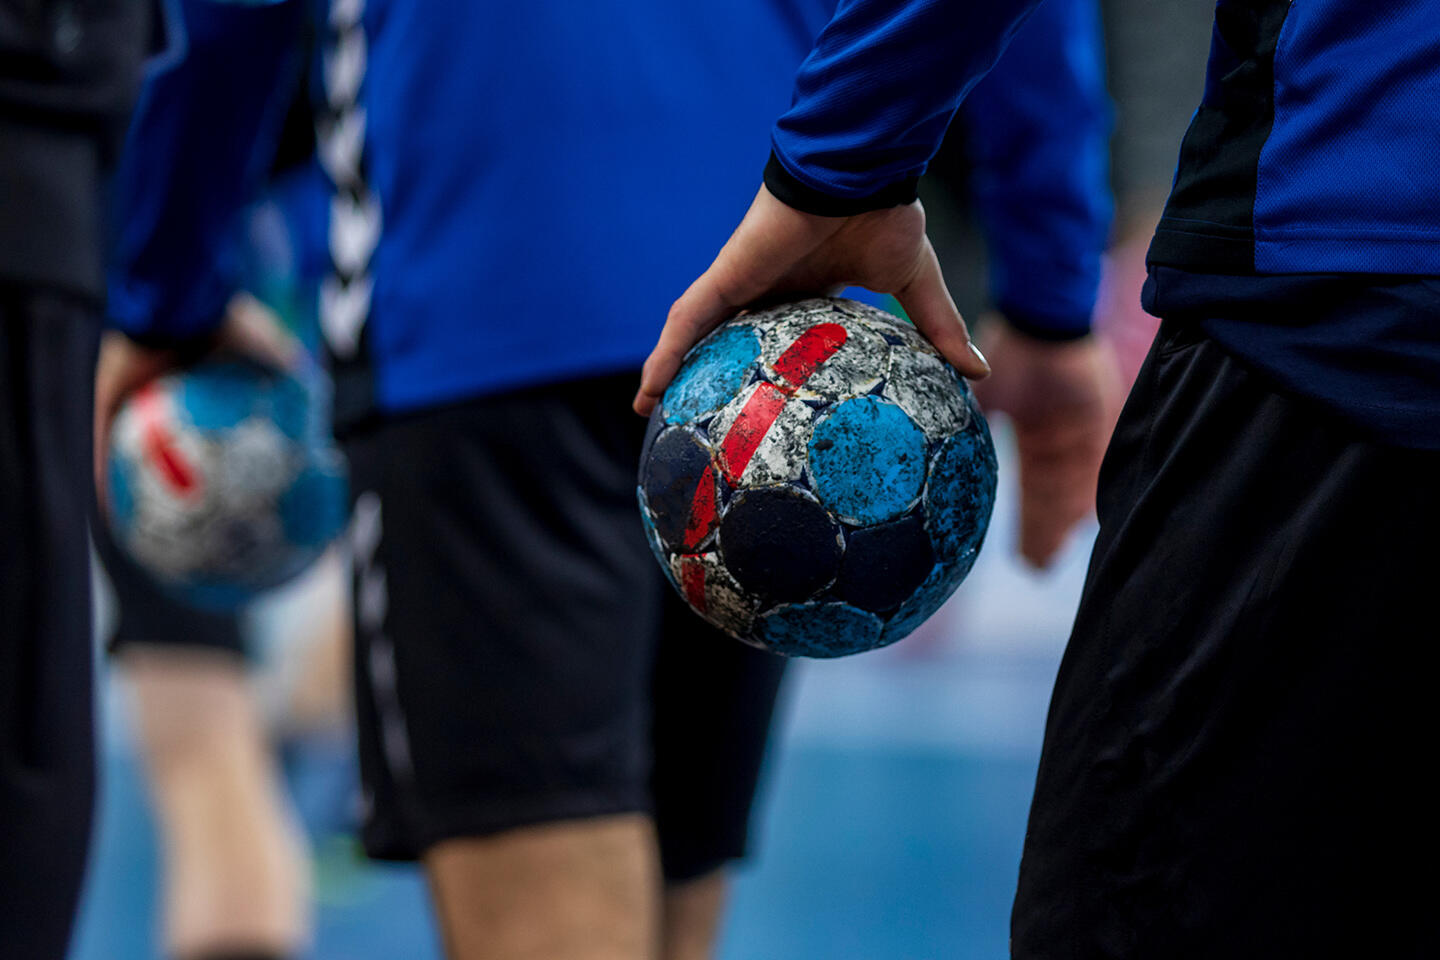 Joueurs de handball en action, tenant fermement des ballons de handball usés aux couleurs écaillées, symbolisant l'intensité et la passion du sport, une activité captivante pour les clients séjournant dans des appart'hôtels près du Stade Pierre-Mauroy à Lille.